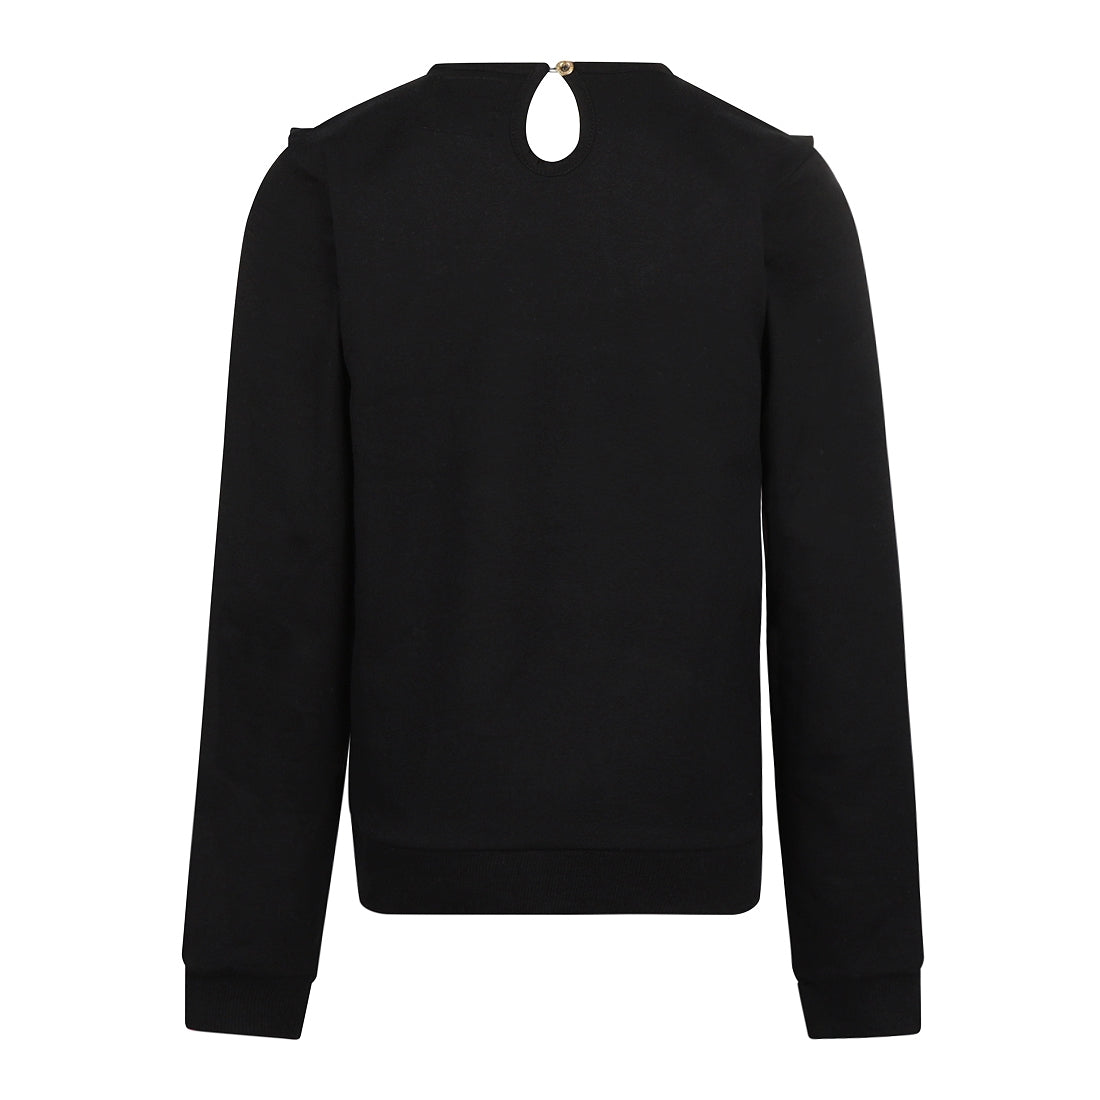 Meisjes Sweater van No Way Monday in de kleur Black in maat 164.